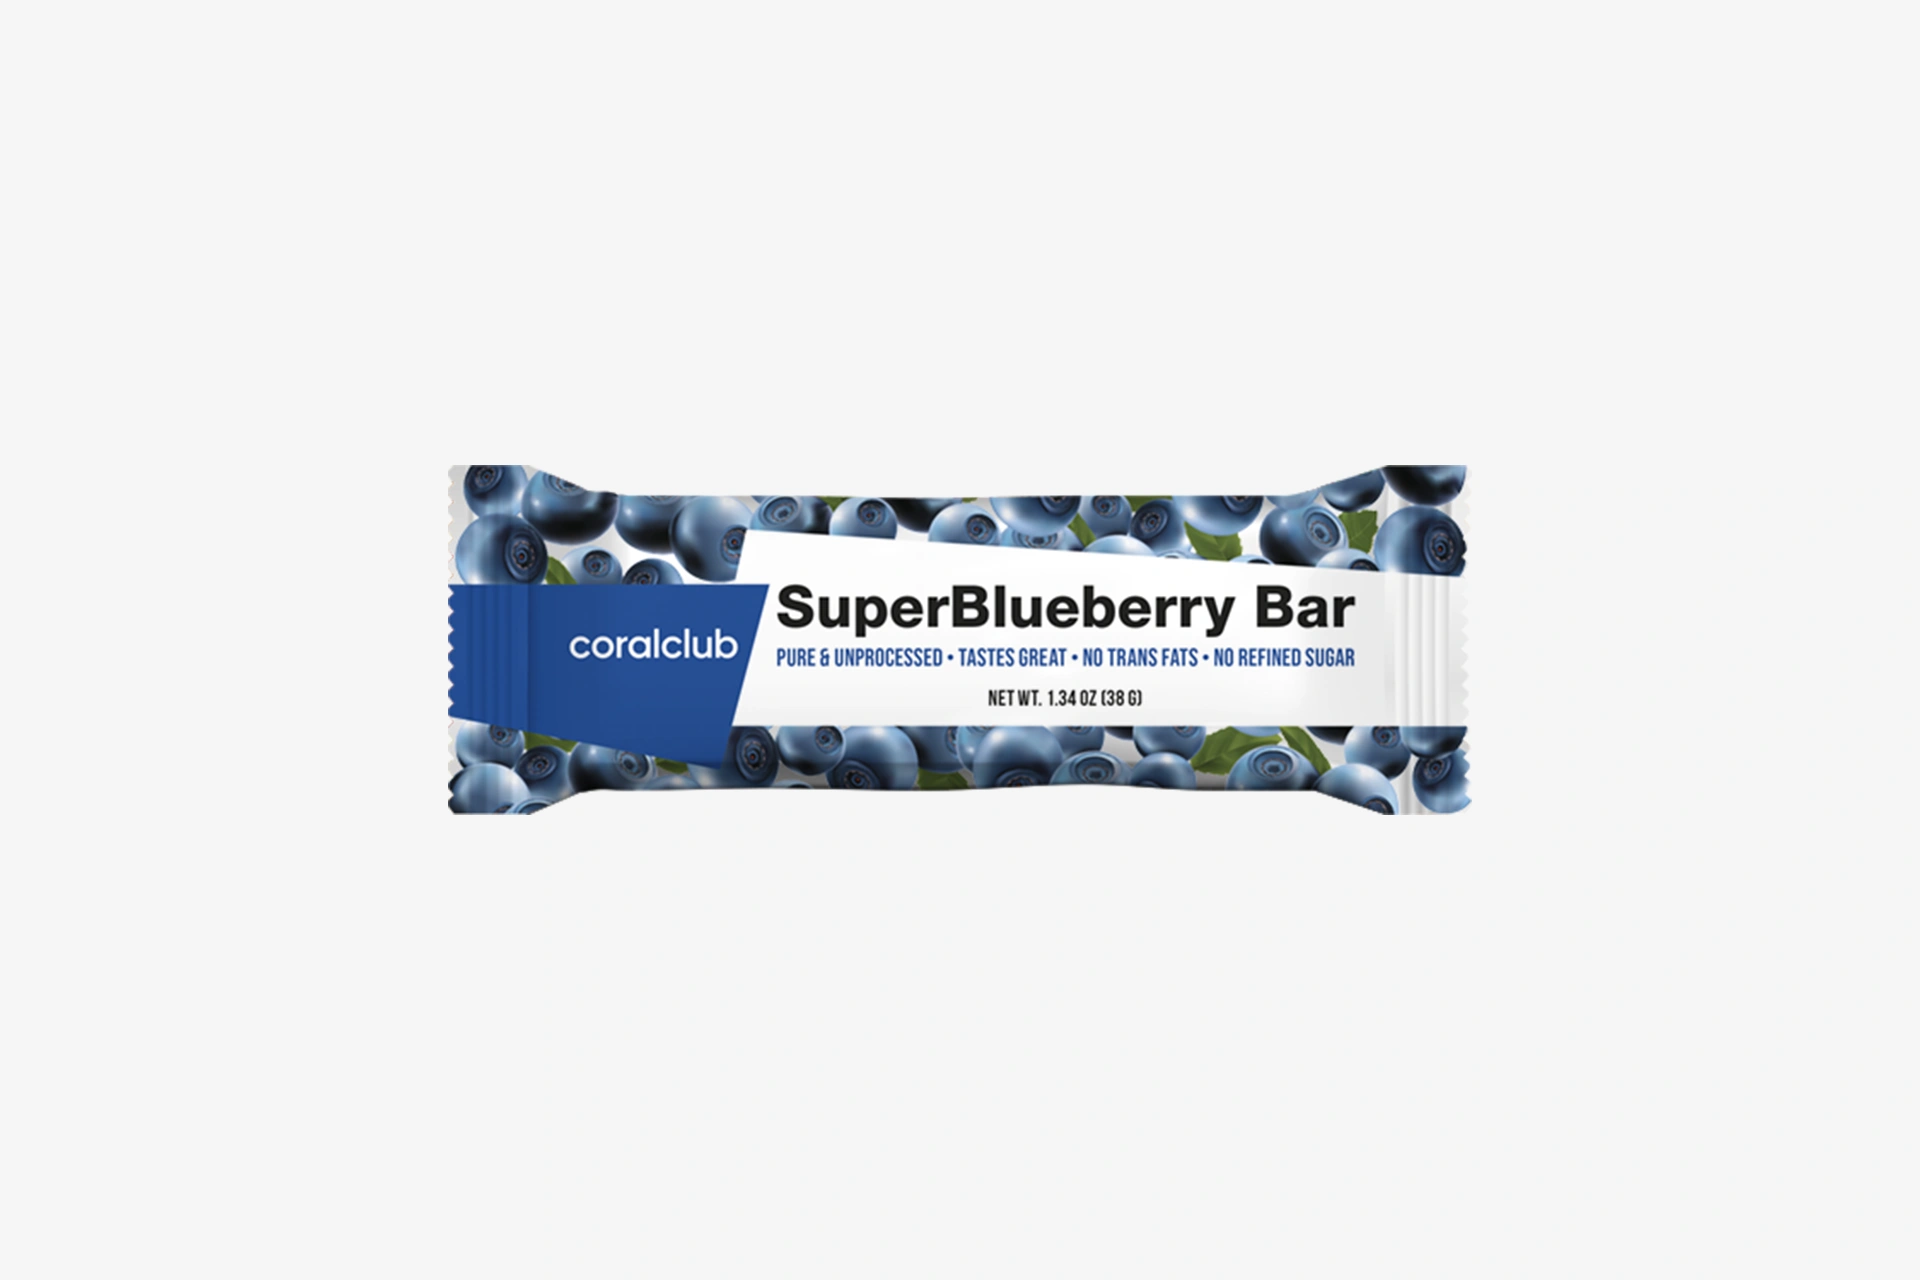 Super Blueberry Bar